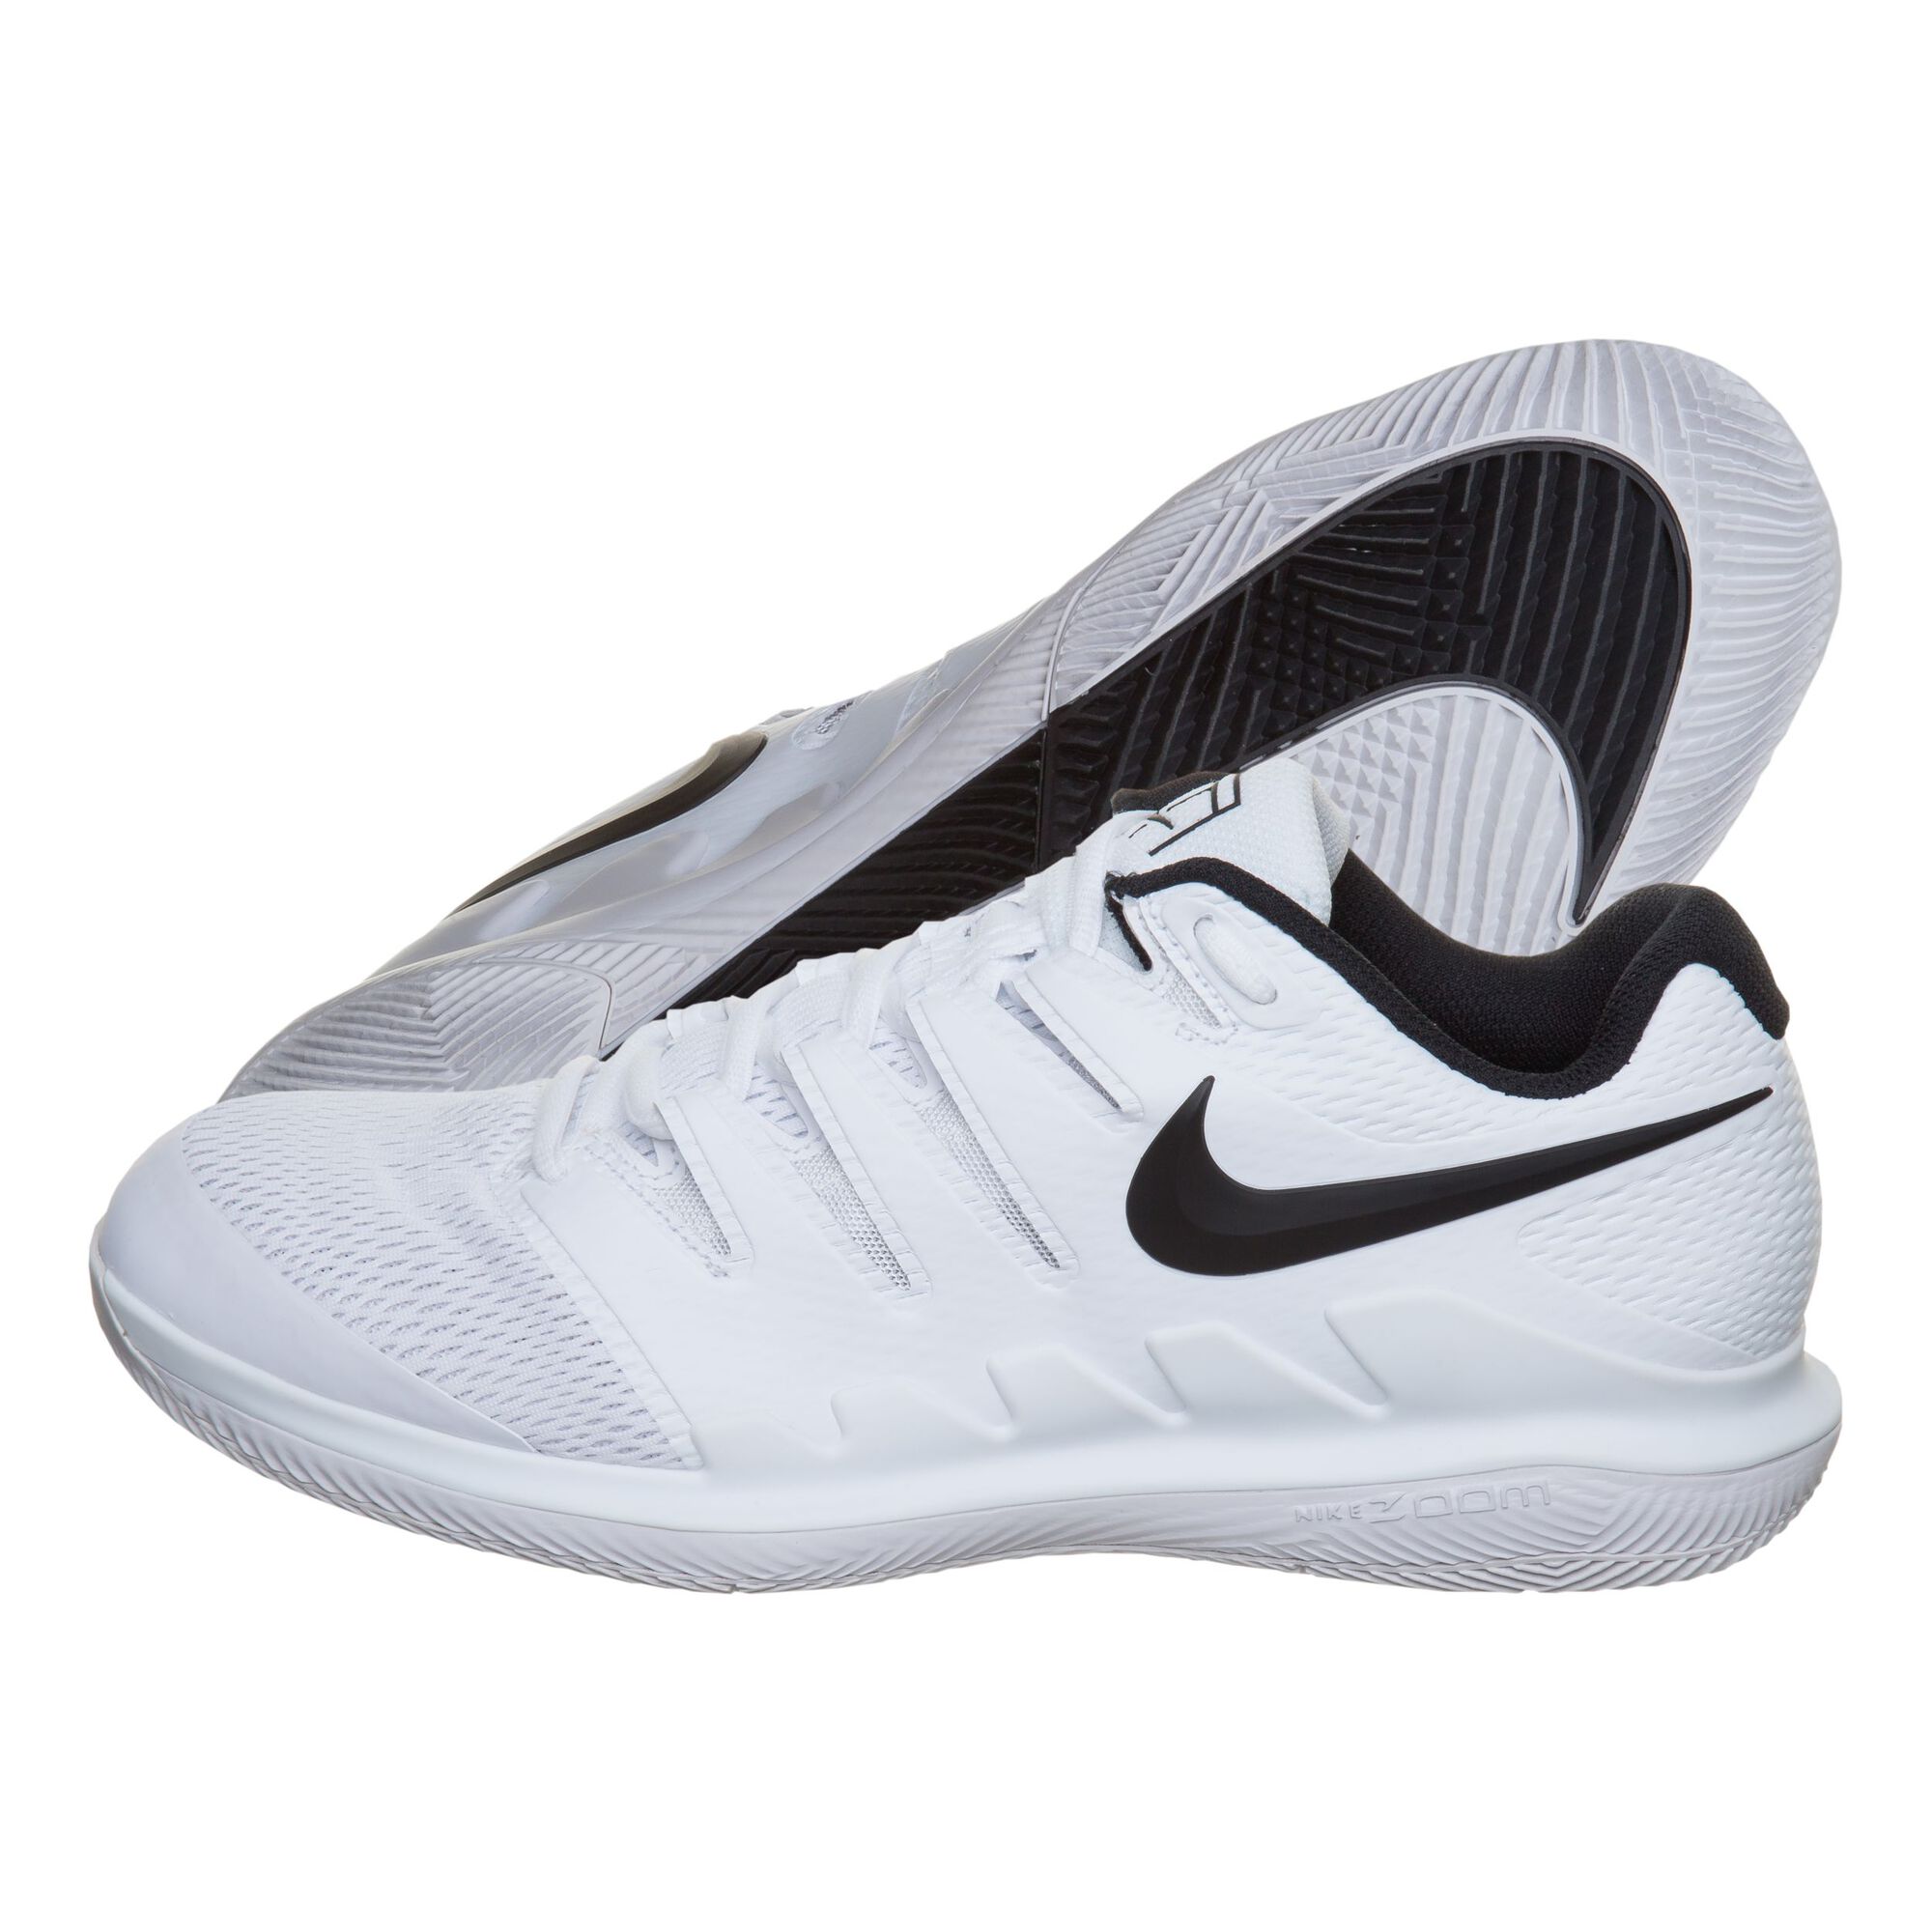 Buy Nike Air Zoom Vapor X All Court Shoe Men White, Black online ...